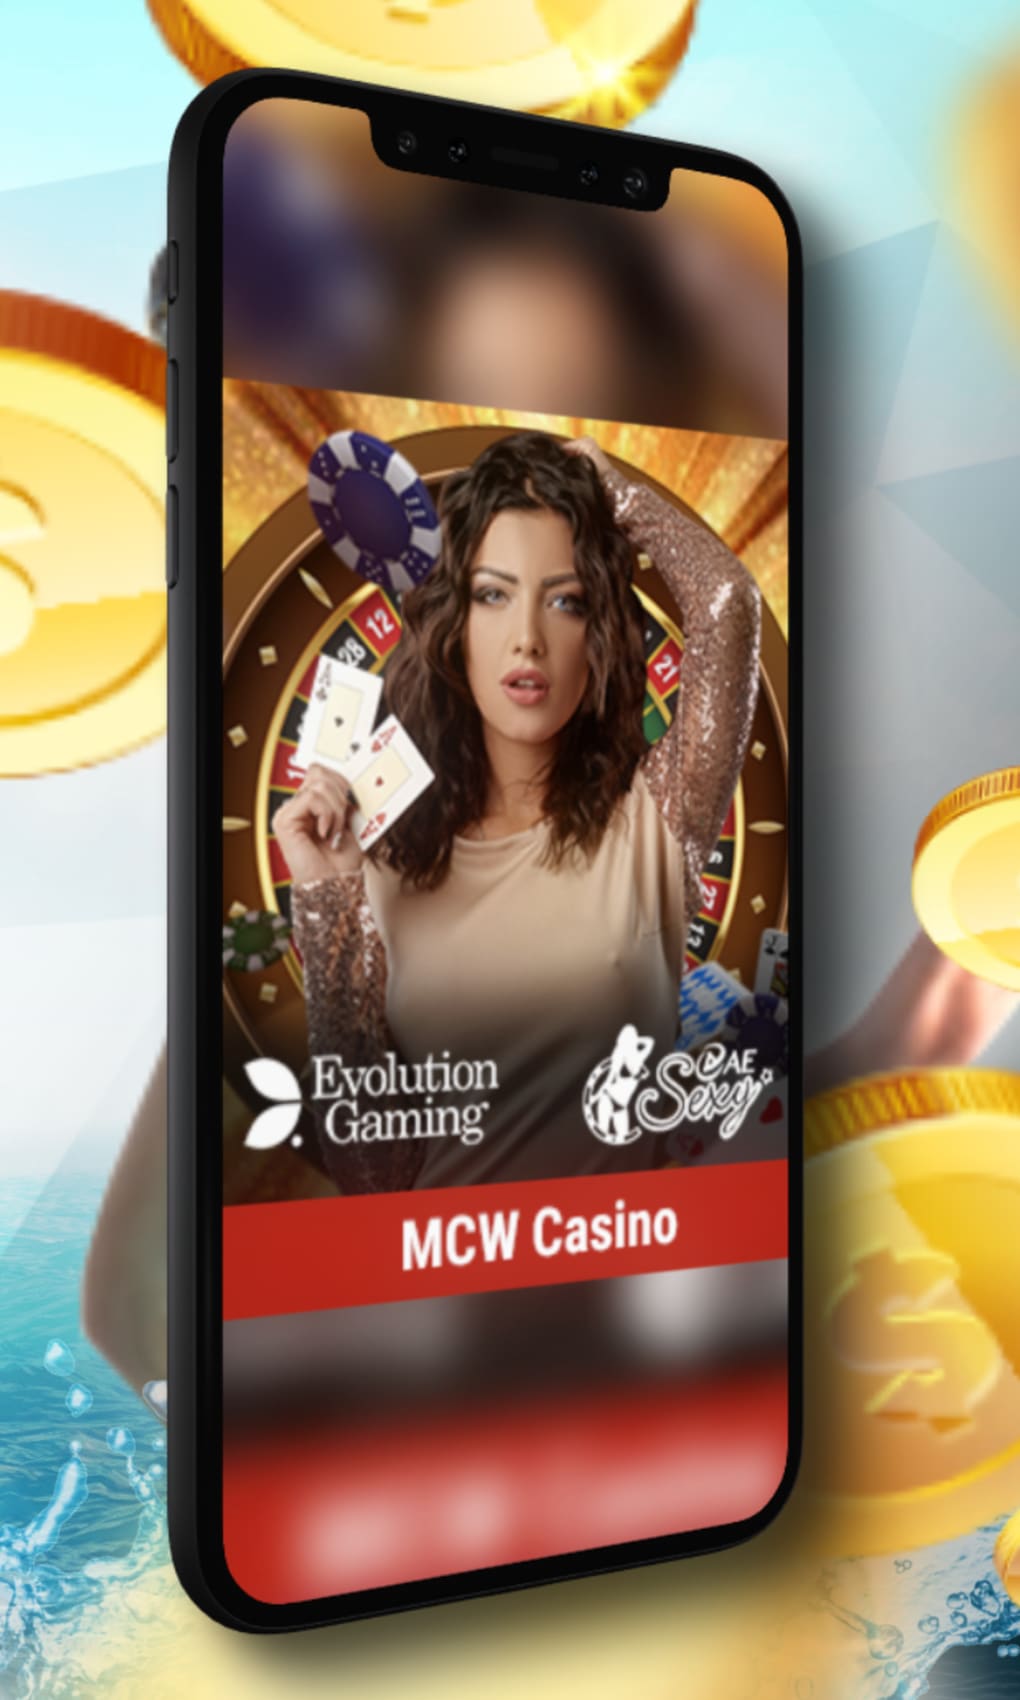 www.mcw casino.com